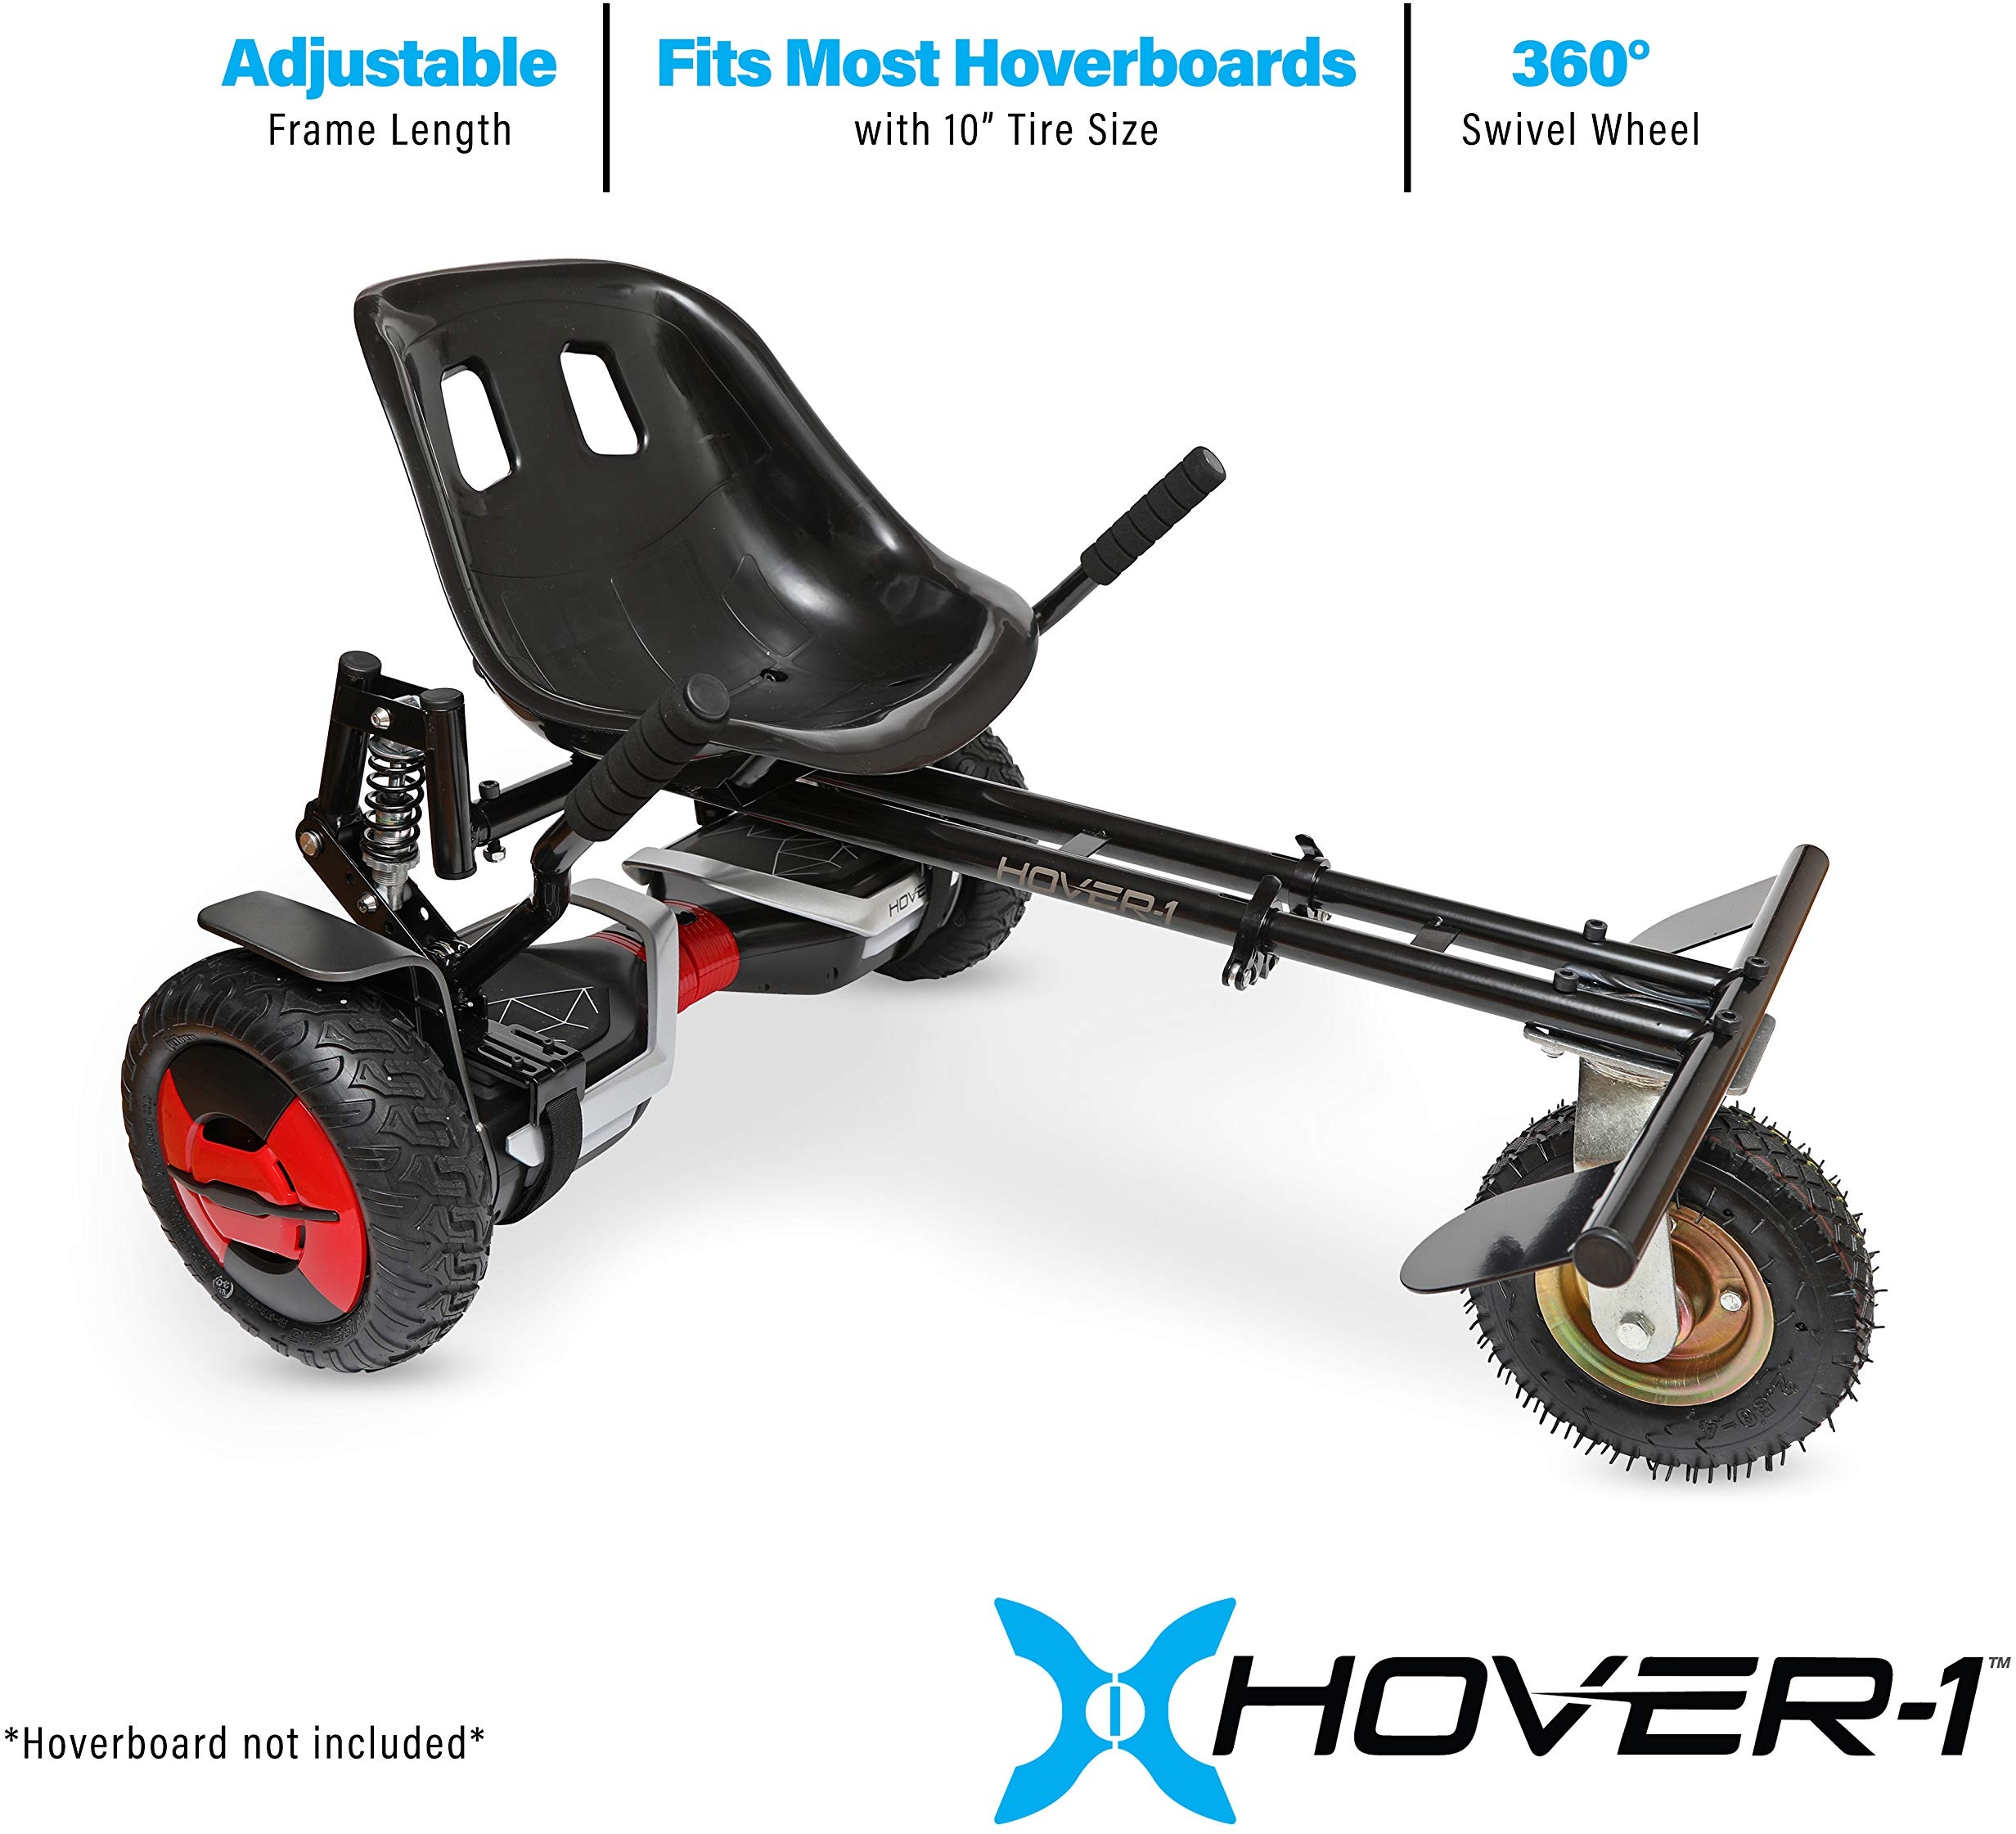 Hover-1 Beast Buggy-Befestigung | kompatibel mit allen 25,4 cm elektrischen Hoverboards, handbedienbare Hinterradsteuerung, verstellbarer Rahmen und Riemen, einfache Montage und Installation, schwarz